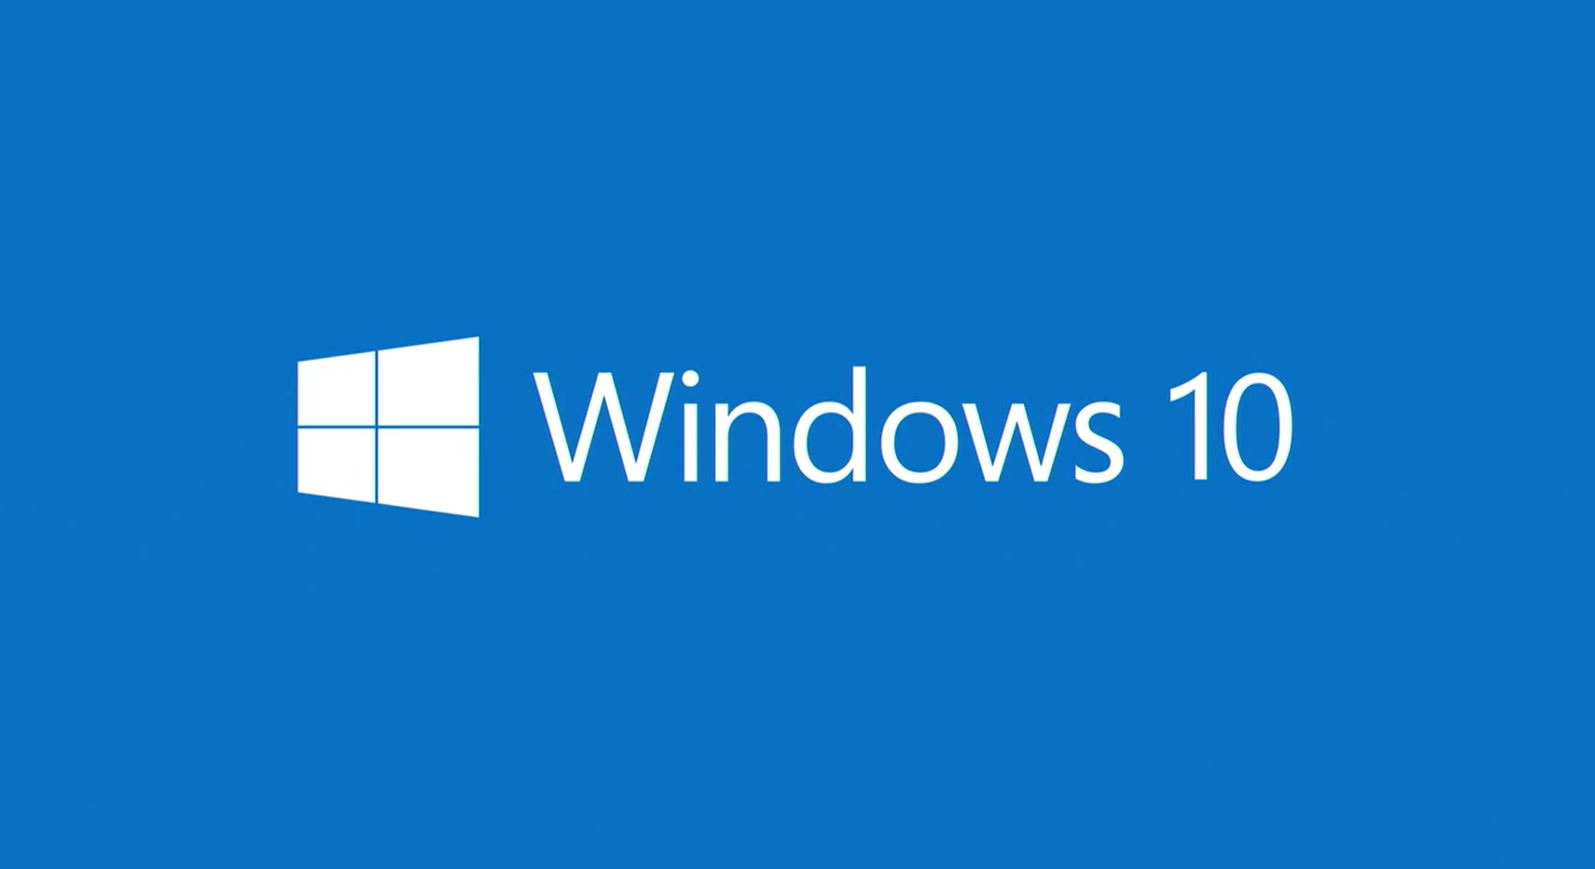 Compra con Grupo Deco tu suscripción completa a Microsoft Windows 10 - Colombia